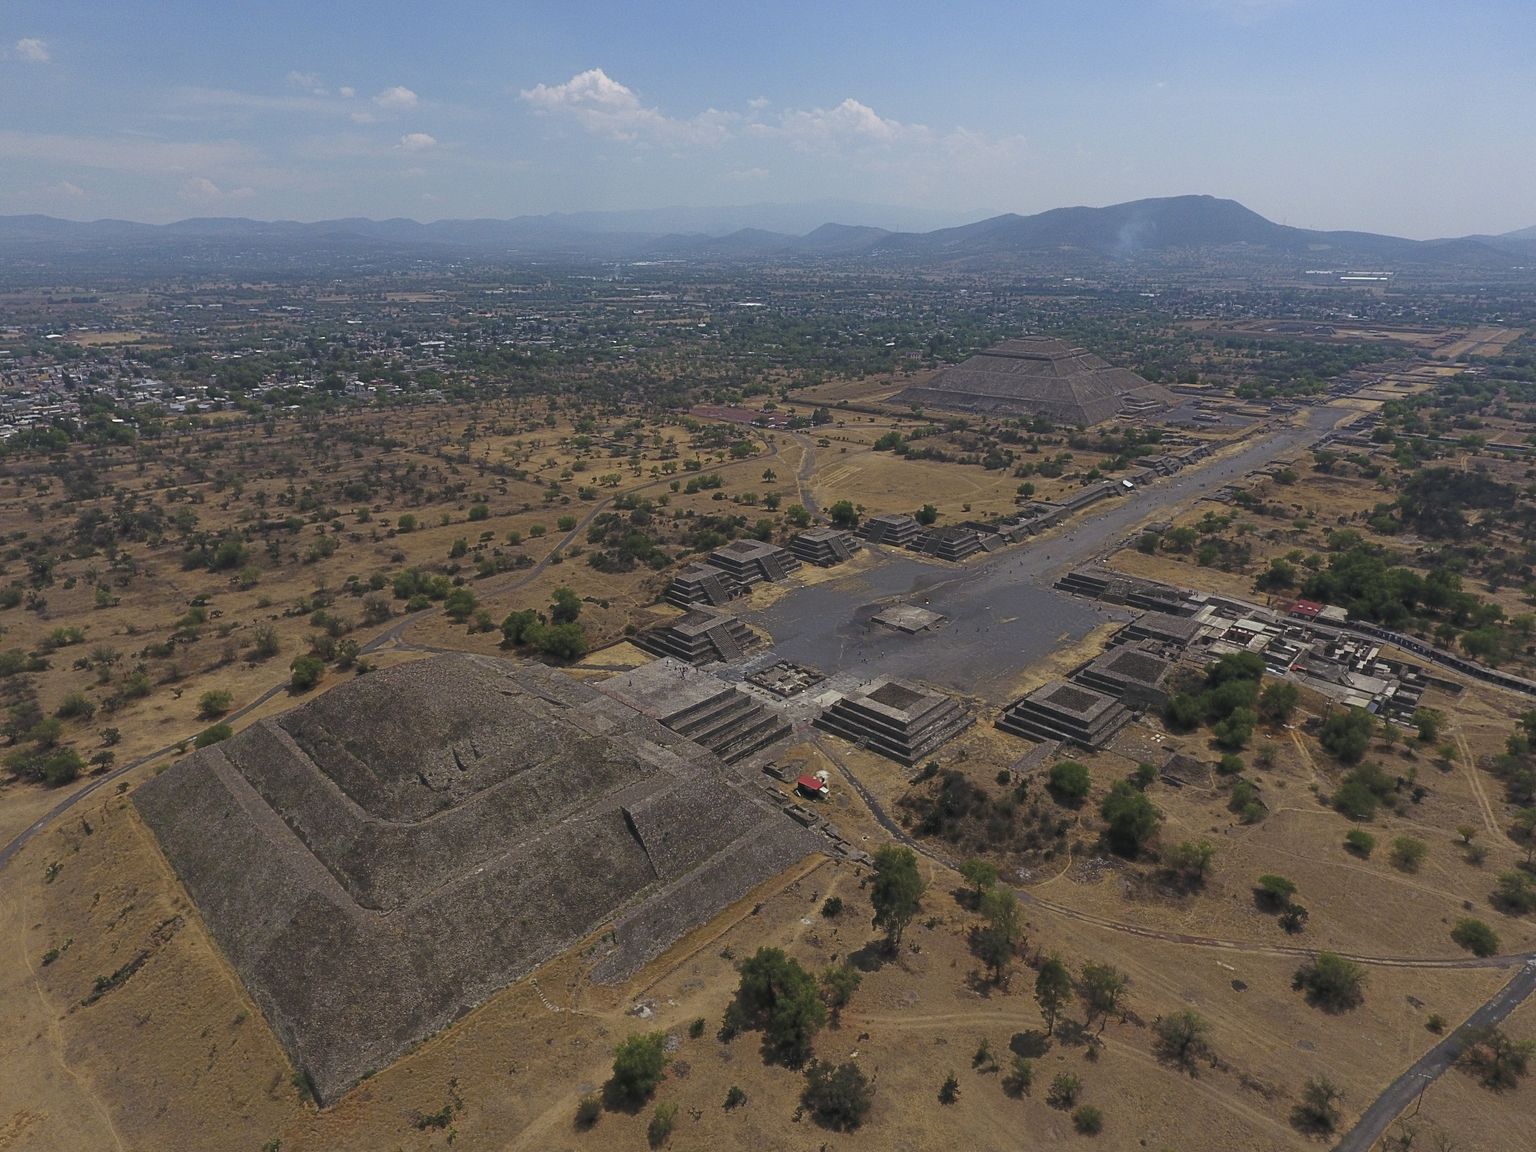 Mehhiko iidse linna Teotihuacani tähtsamad püramiidid. Kuupüramiid vasakul ja Päikesepüramiid paremal